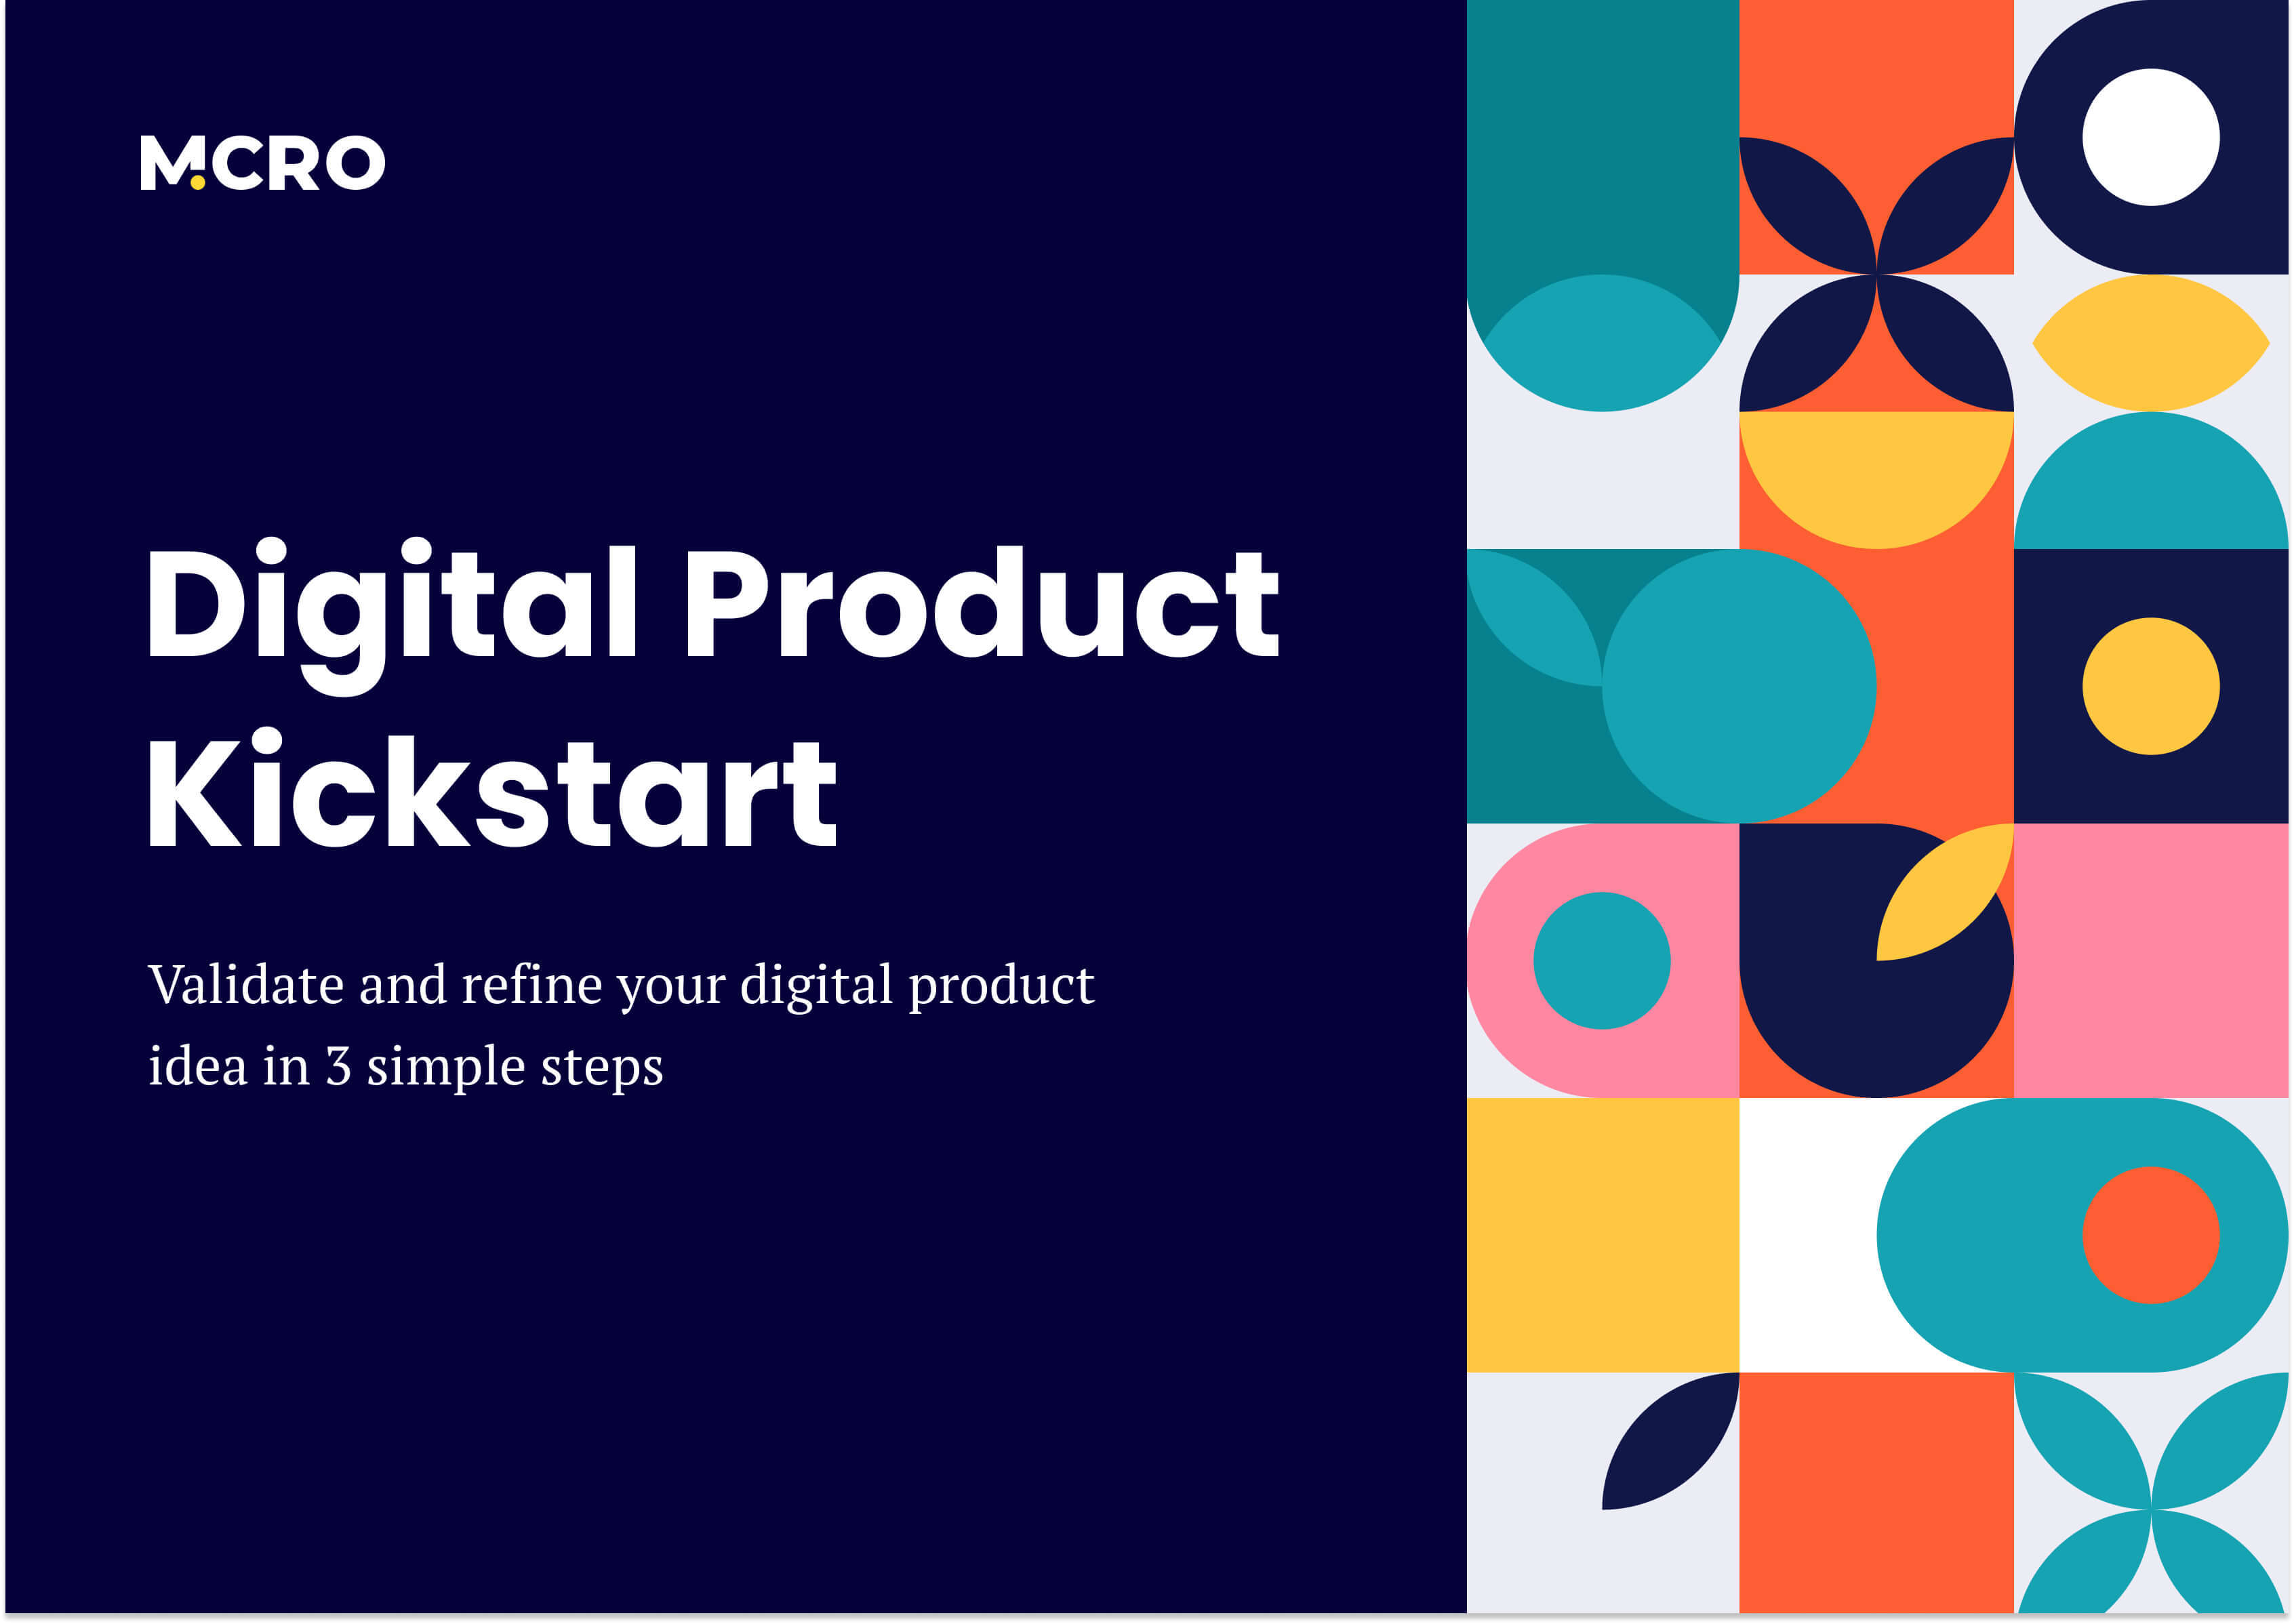 Digital Product Kickstart